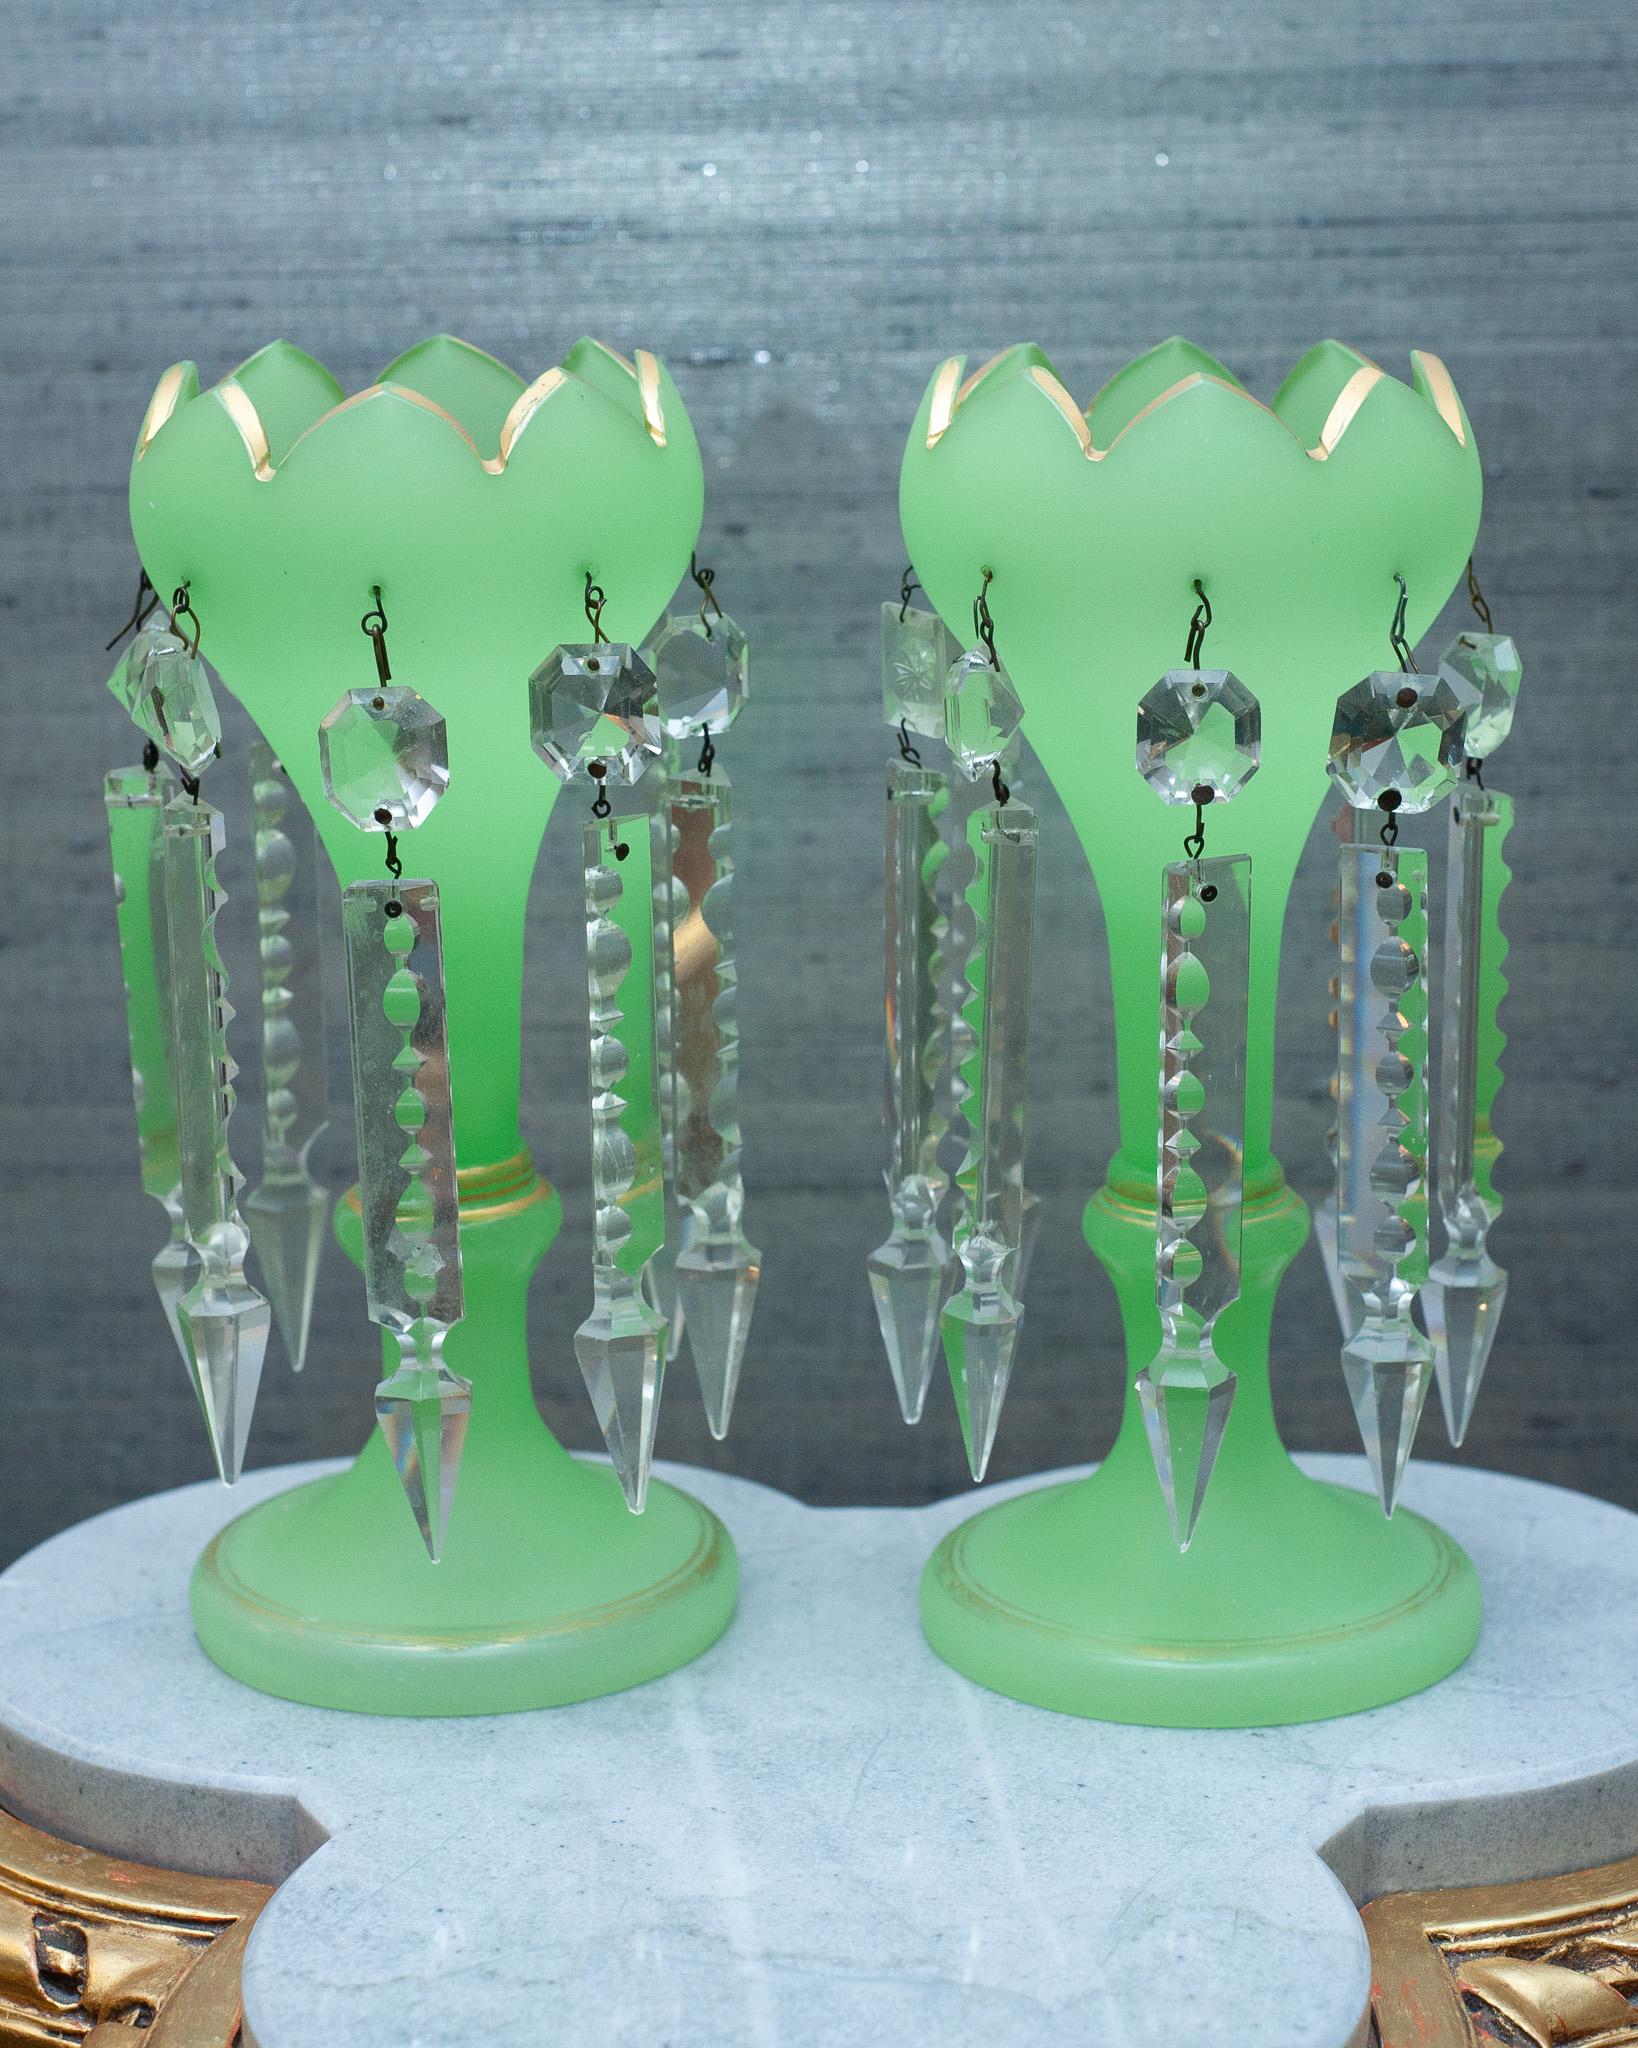 Superbe paire de lustres de manteau en verre opalin français ancien, en verre opalin vert avec dorure et bord festonné, et prismes en cristal taillé. Chaque lustre comporte 8 prismes suspendus.